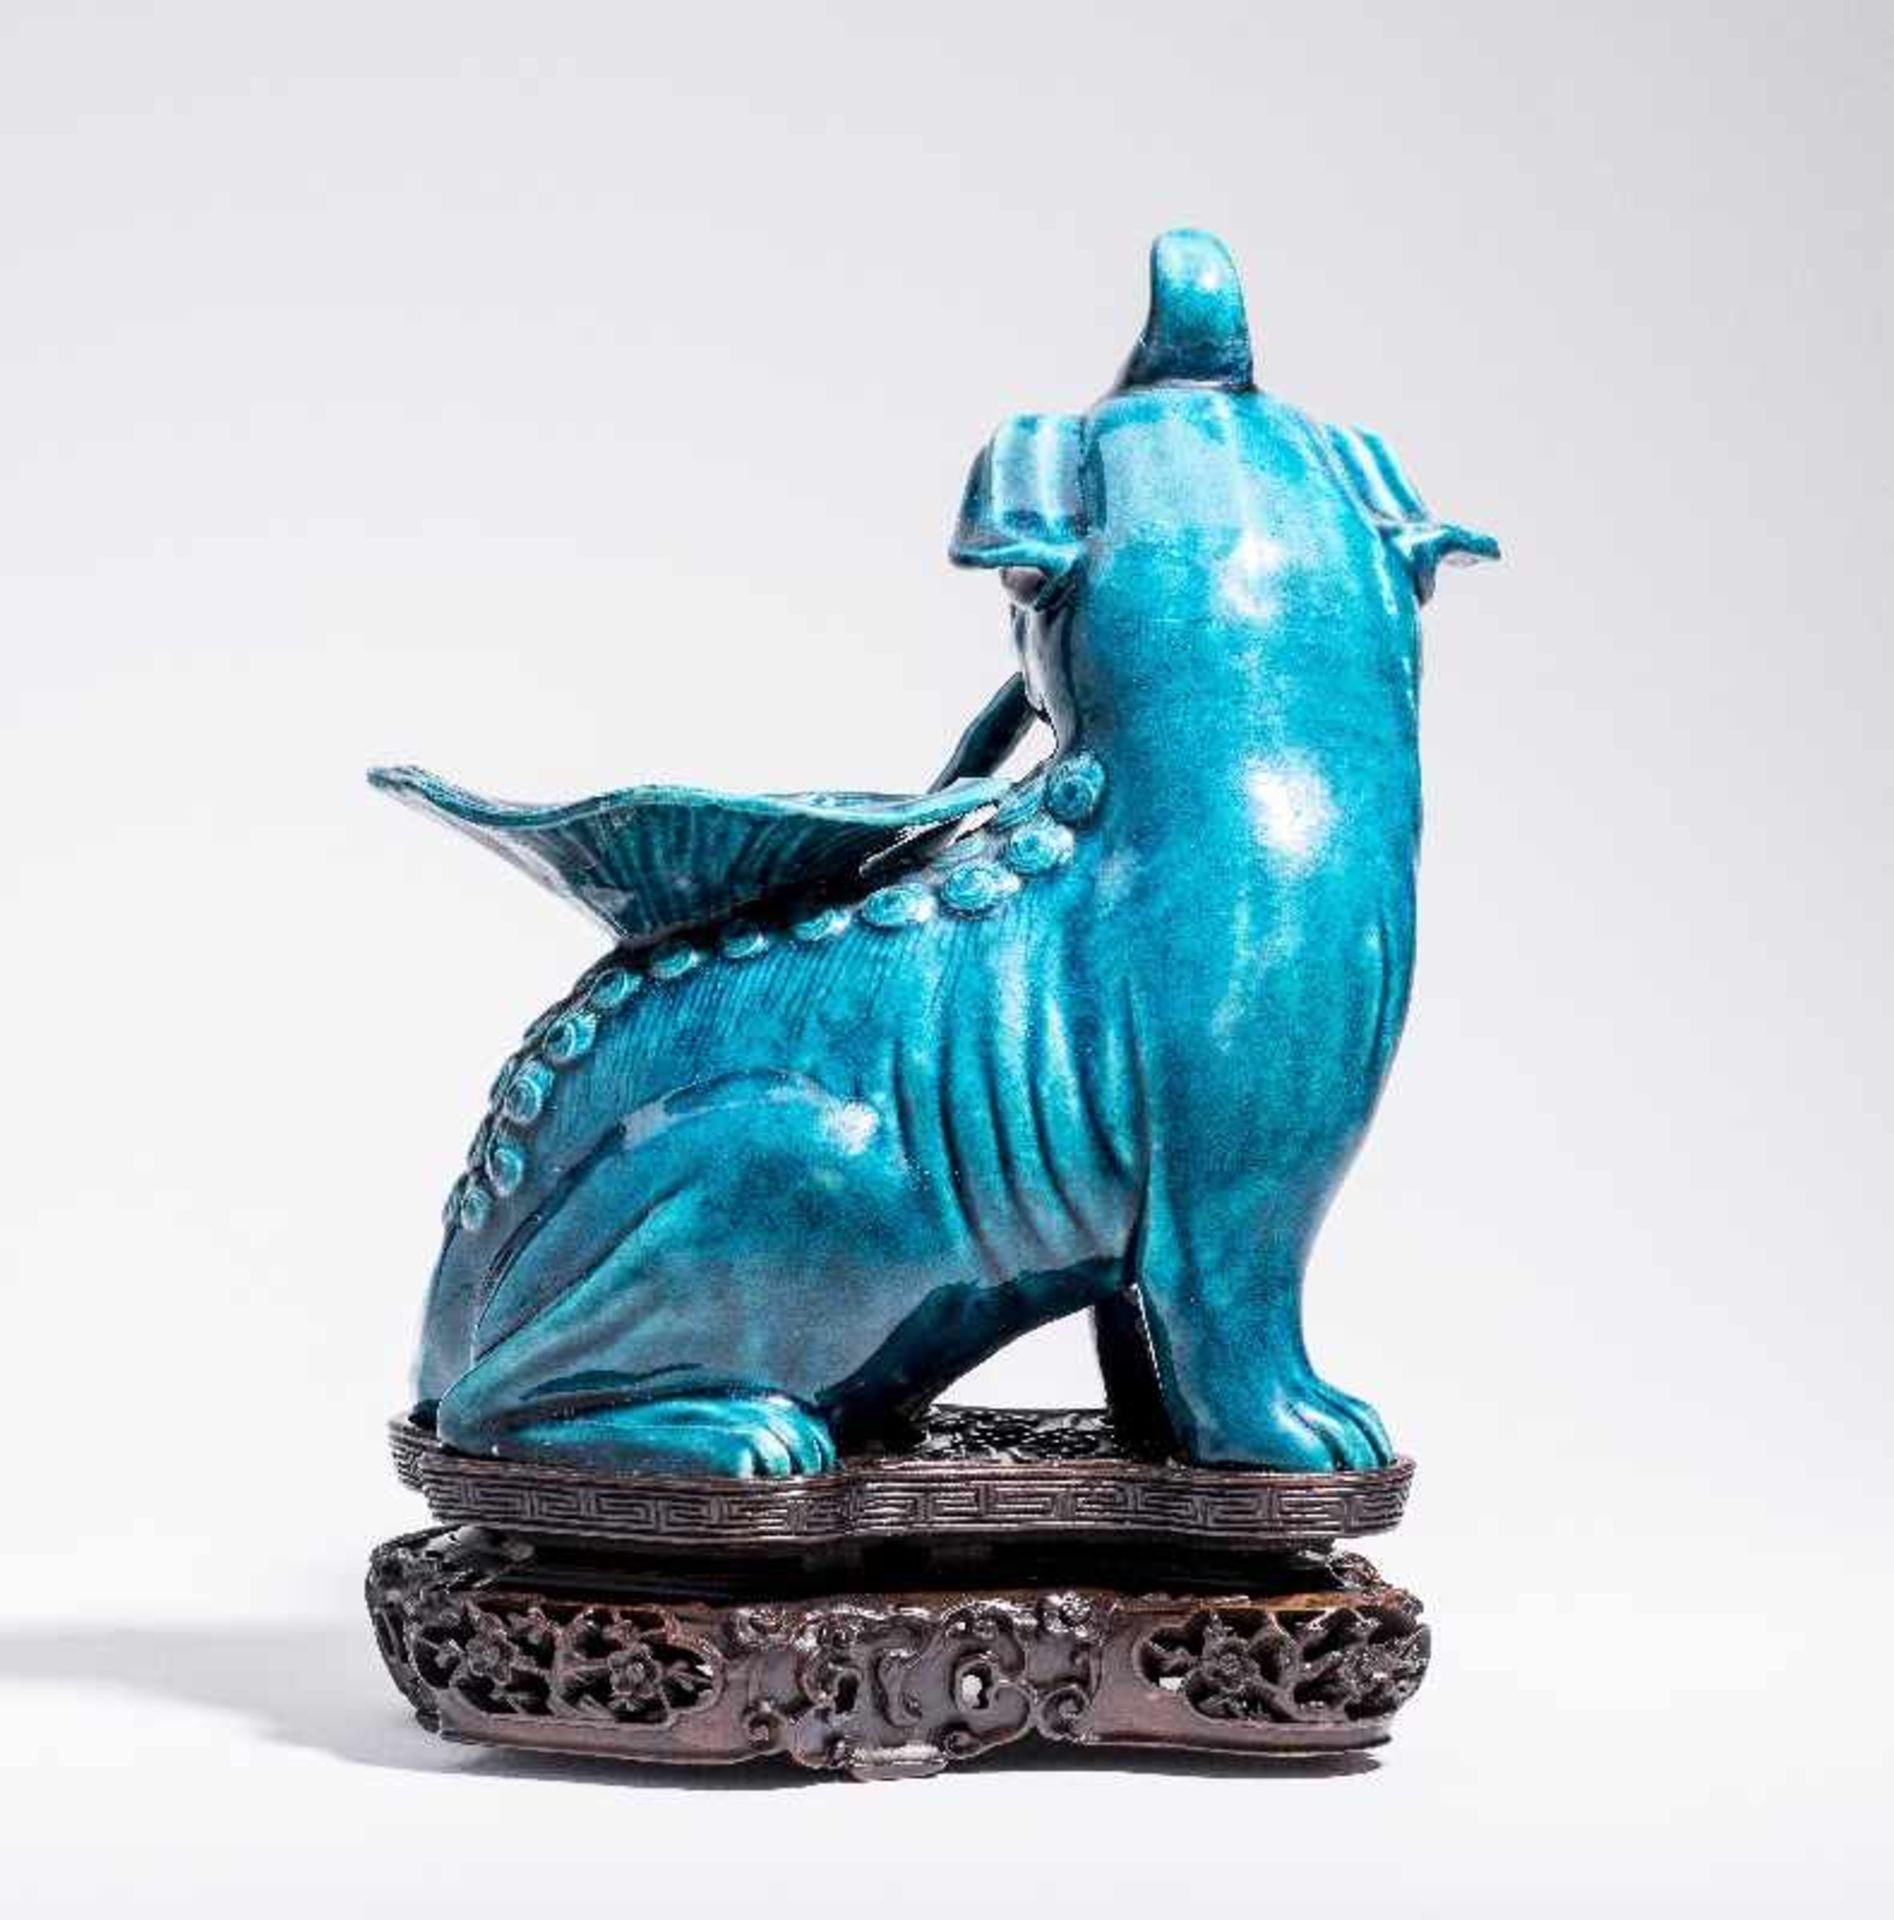 SITZENDES EINHORNPorzellan. China, Qing-Dynastie, 18. Jh. An dieser Porzellanskulptur des - Image 4 of 7